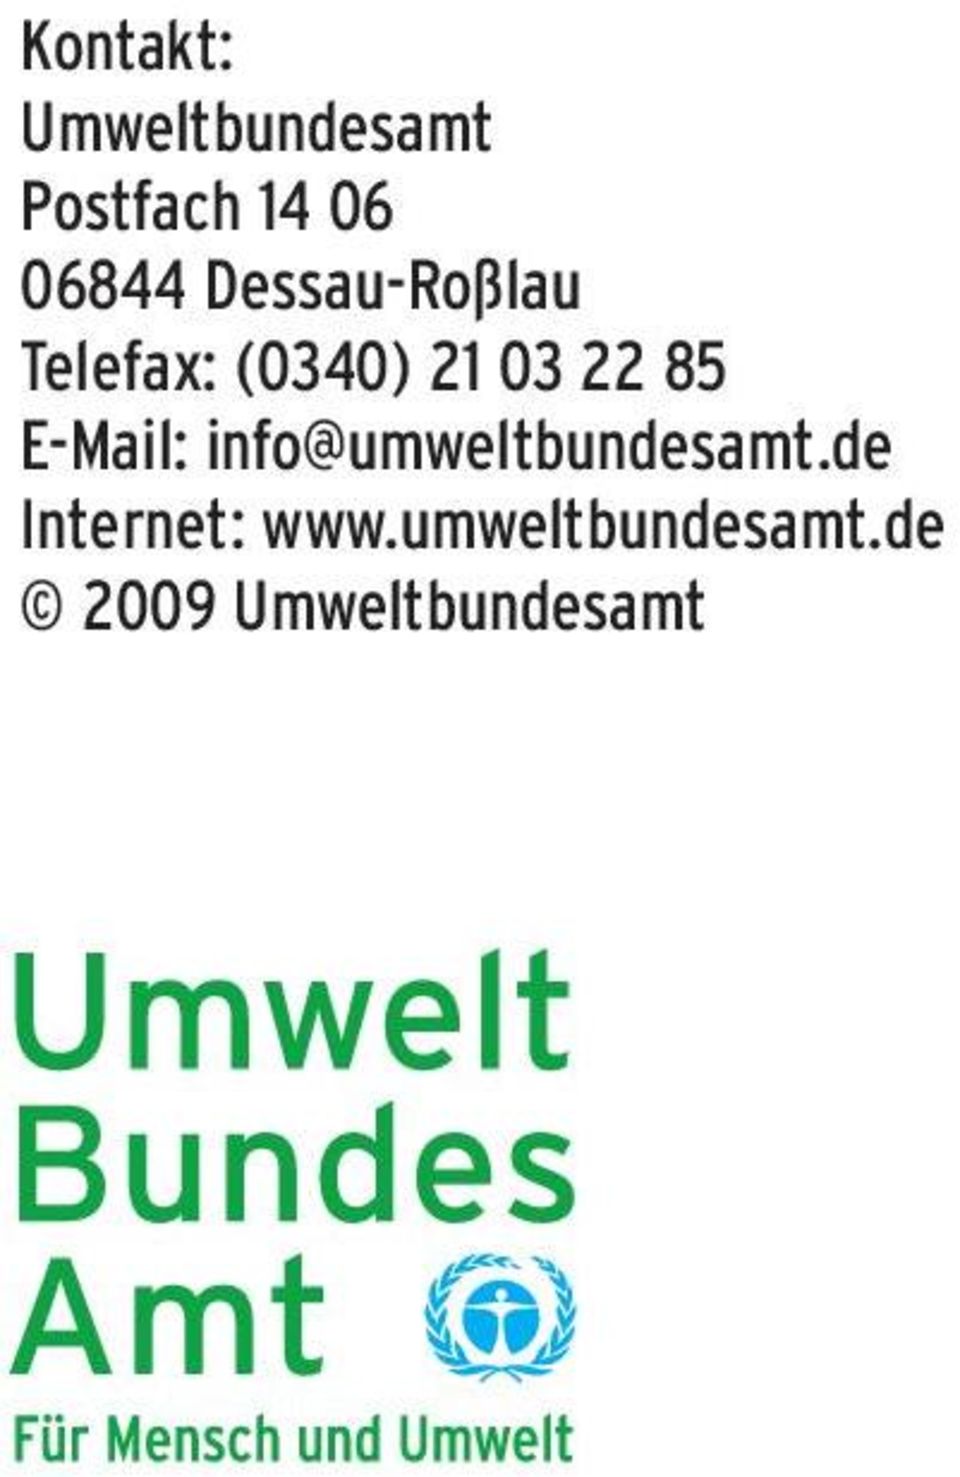 22 85 E-Mail: info@umweltbundesamt.